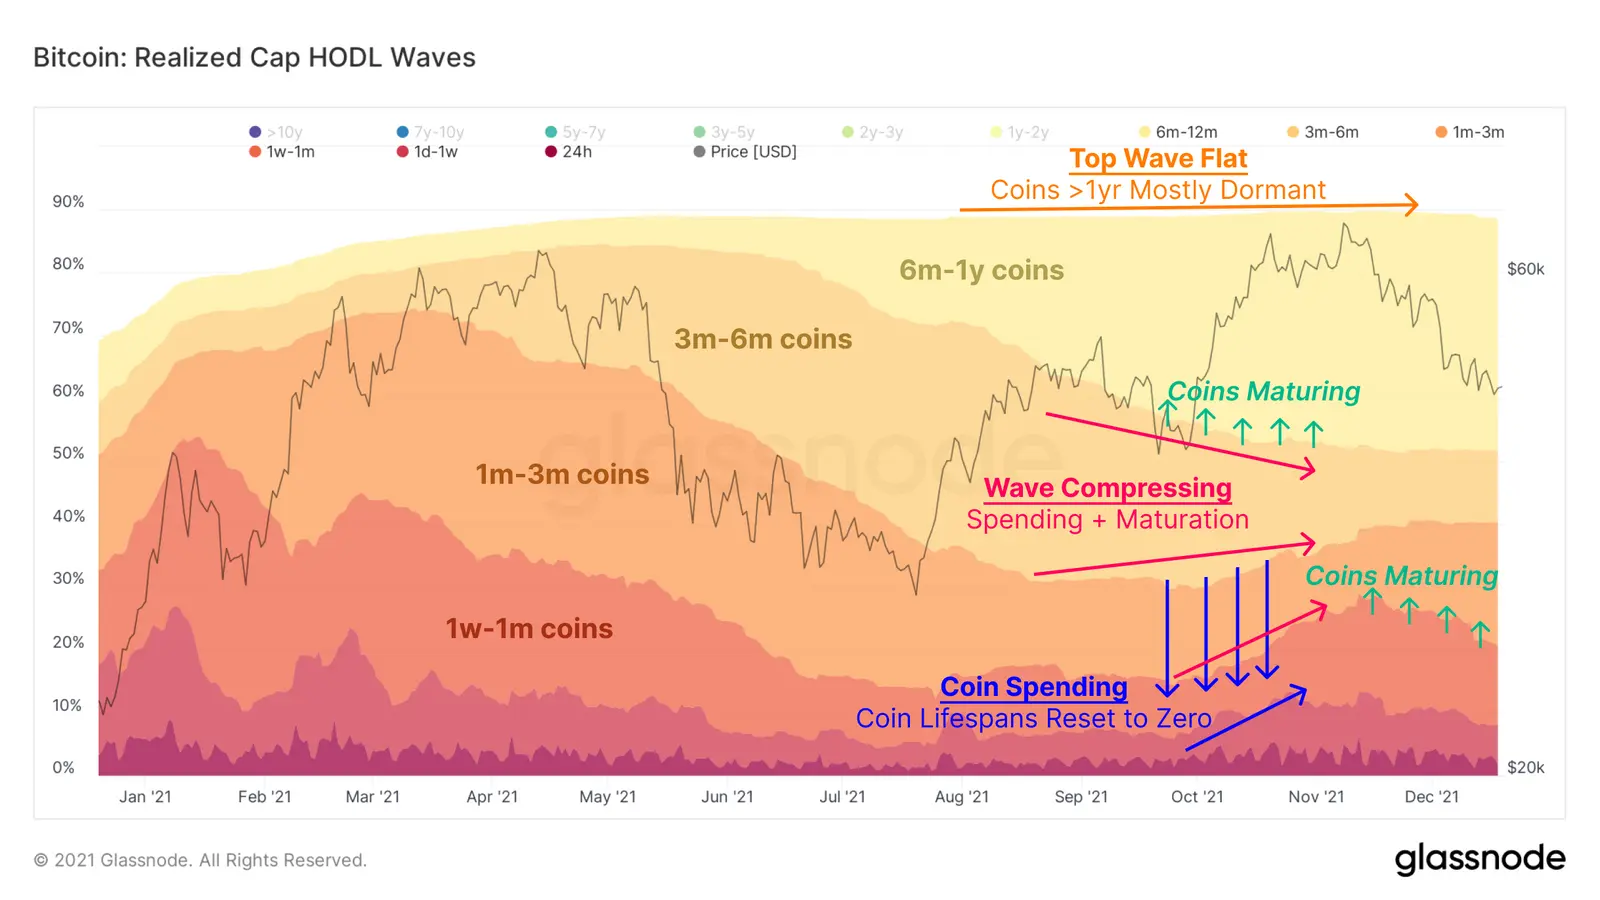 HODL-Waves basierend auf der realisierten Marktkapitalisierung von Bitcoin